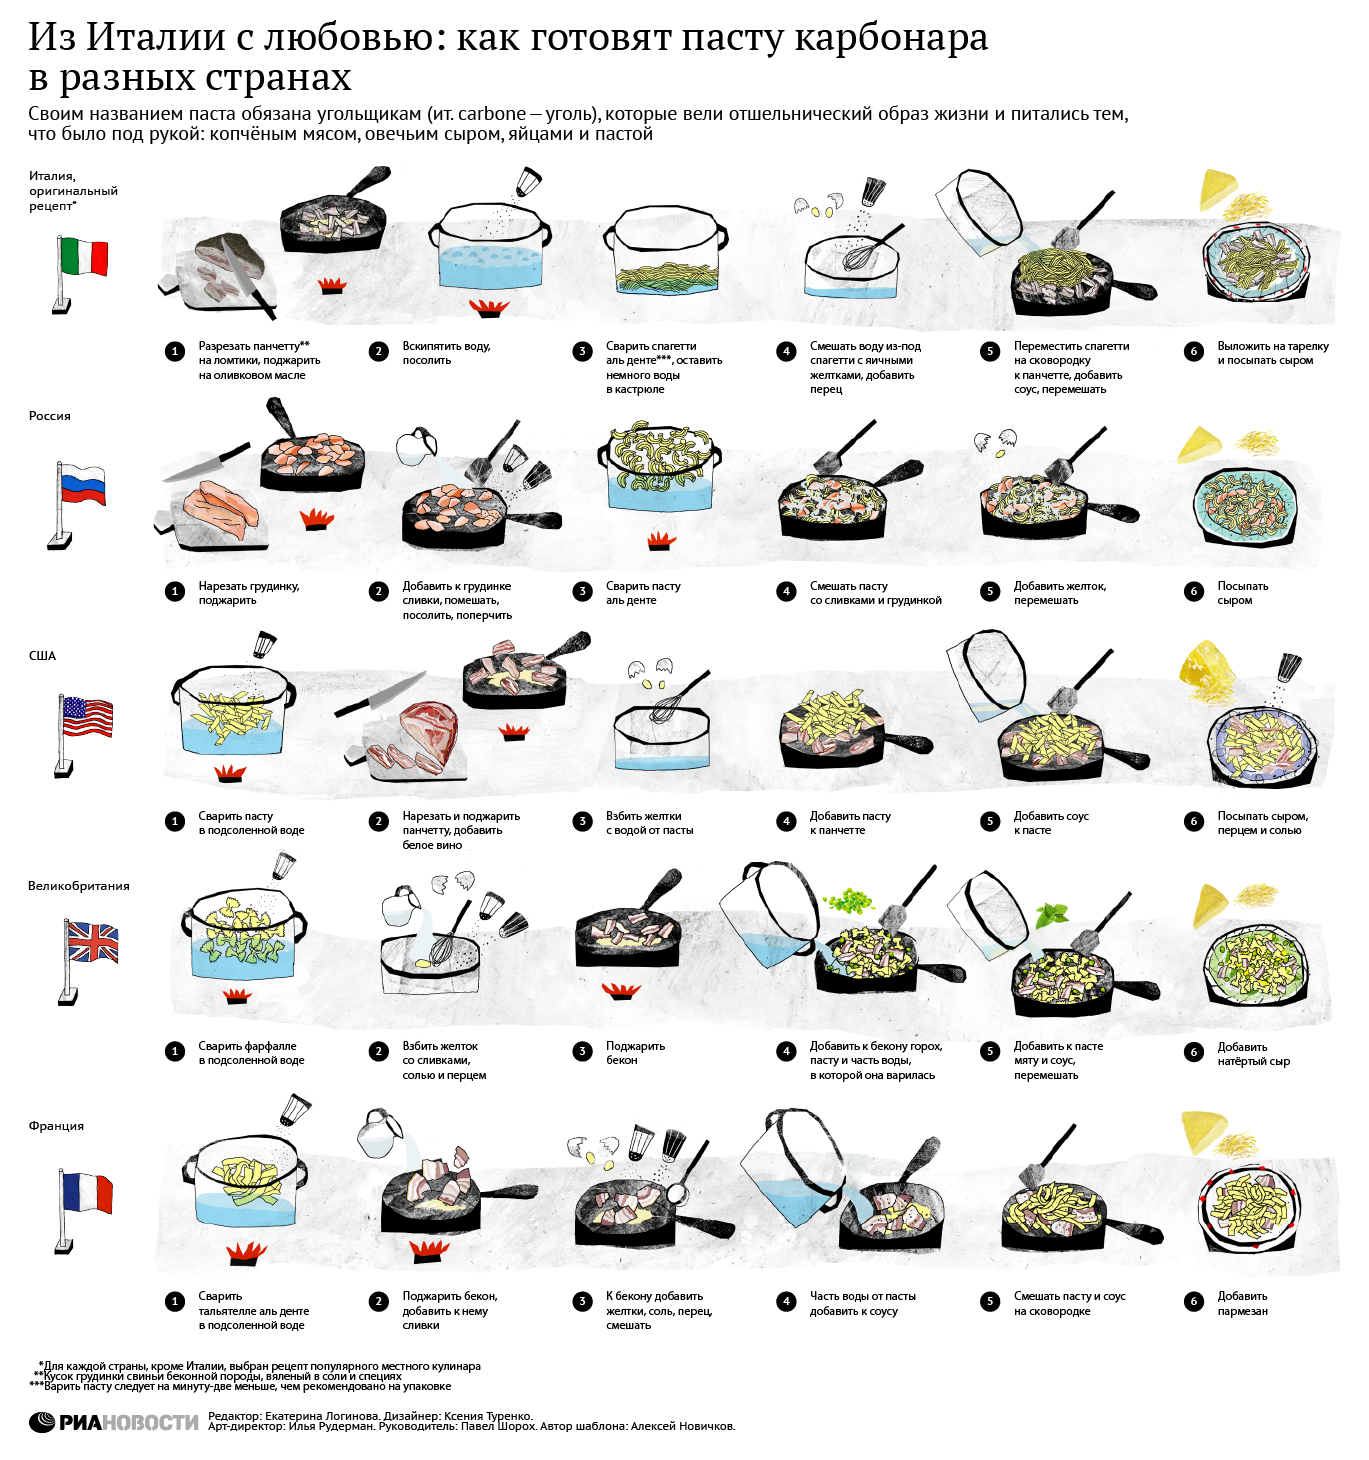 Рецепты пасты карбонара разных стран мира